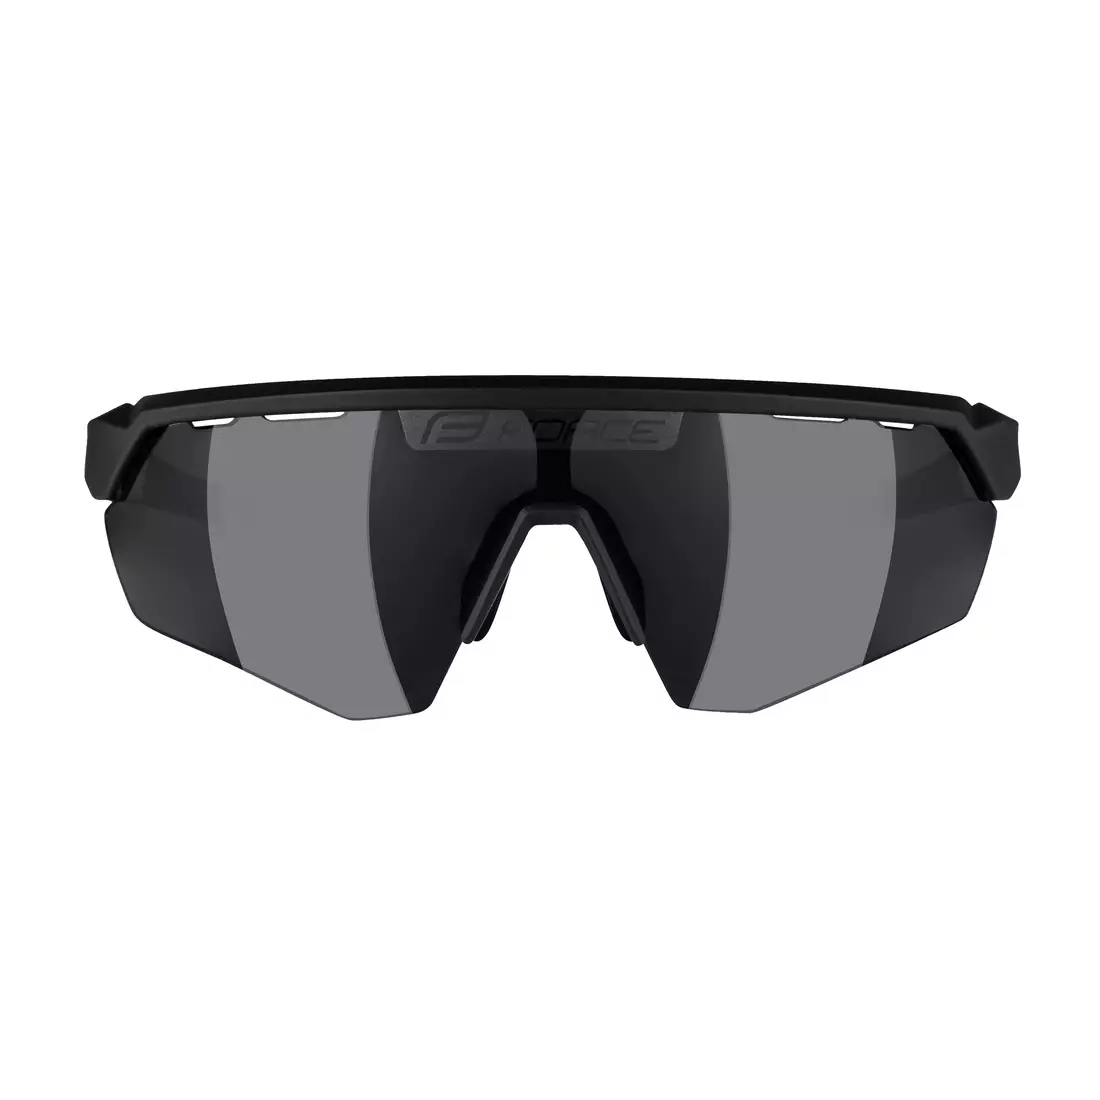 FORCE Sonnenbrille ENIGMA, schwarz-weiß matt, schwarze Gläser 91162